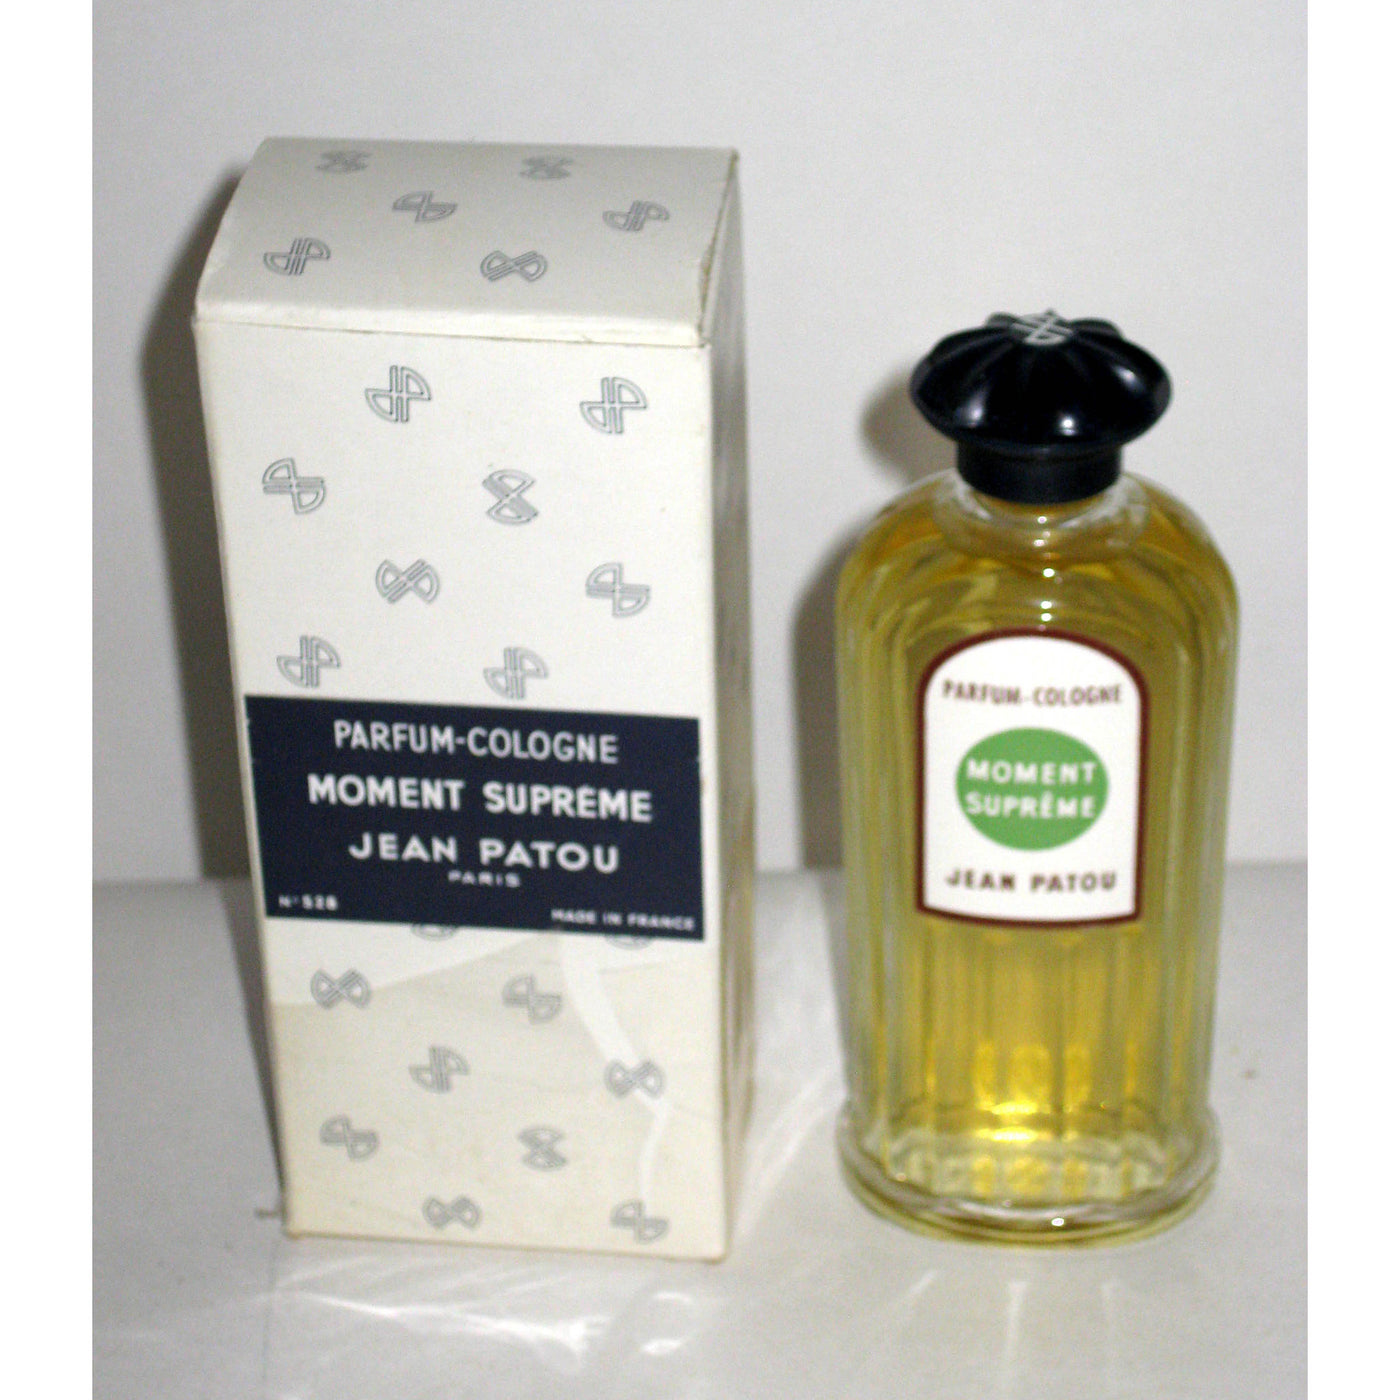 Vintage Jean Patou Moment Supreme Parfum Cologne